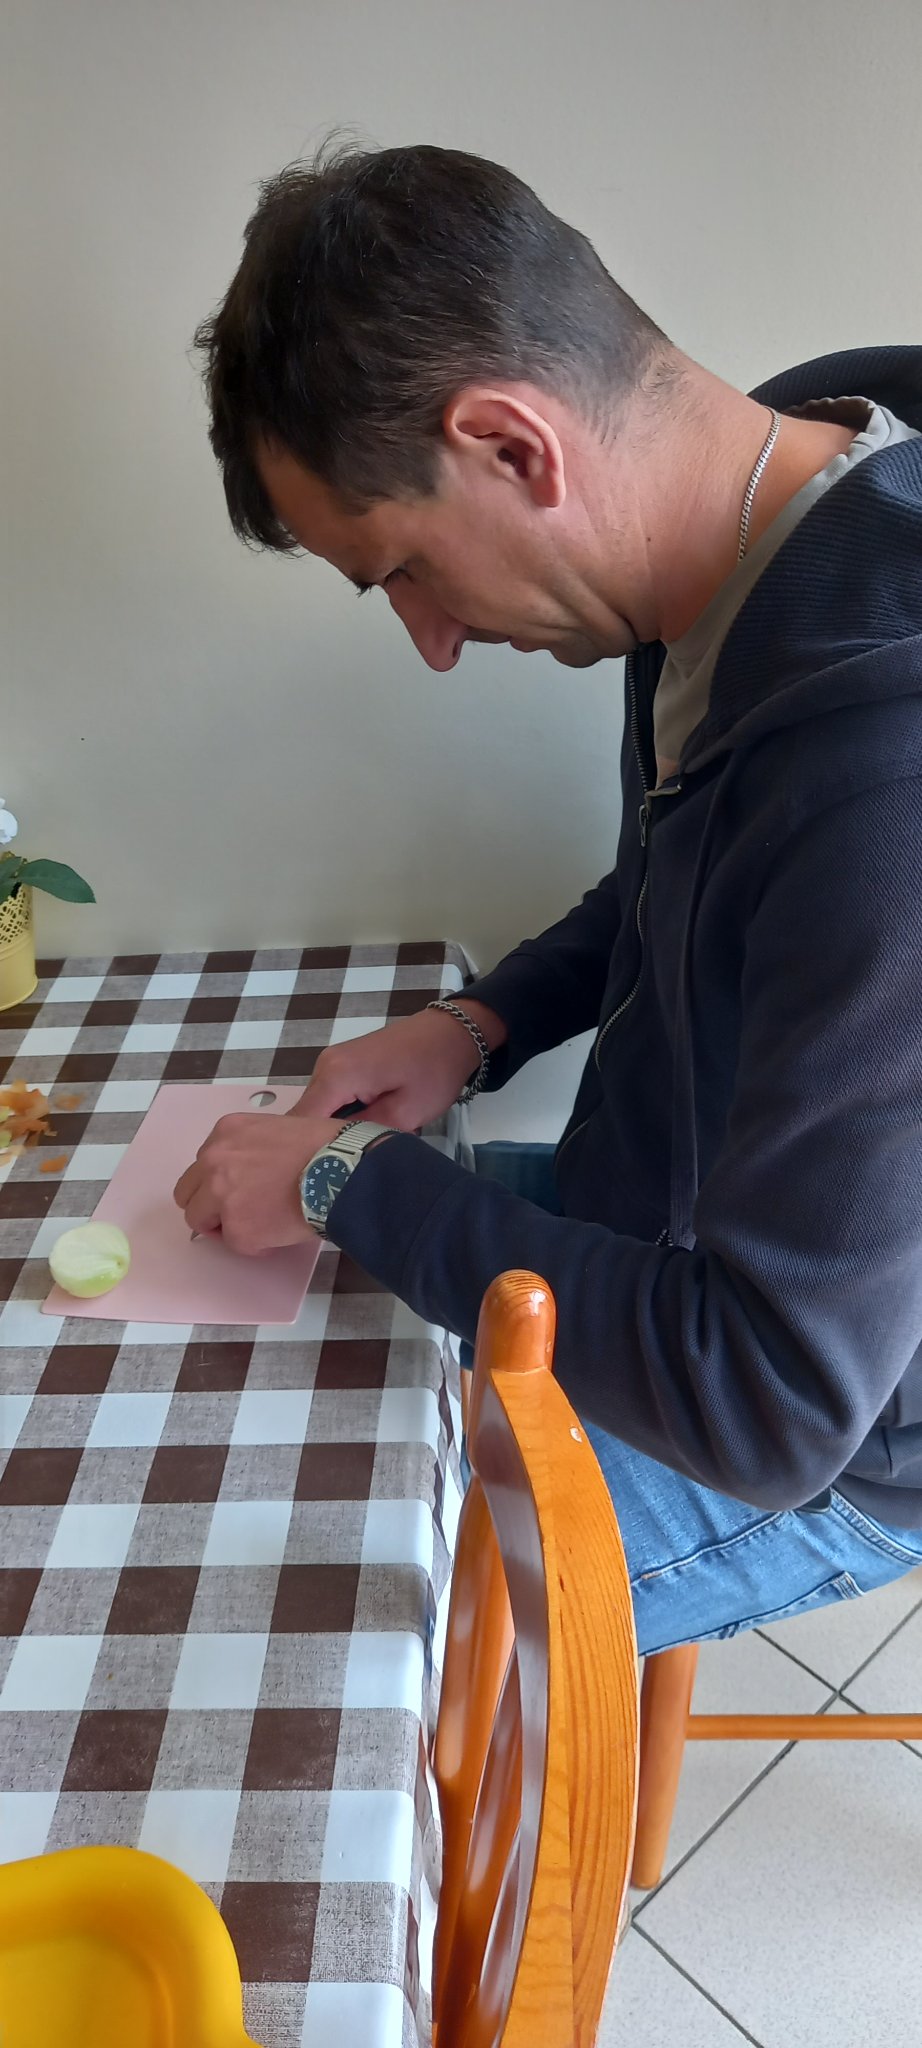 Mężczyzna siedzi w pomieszczeniu przy stole z ceratą w kratkę, kroi cebulę na desce.